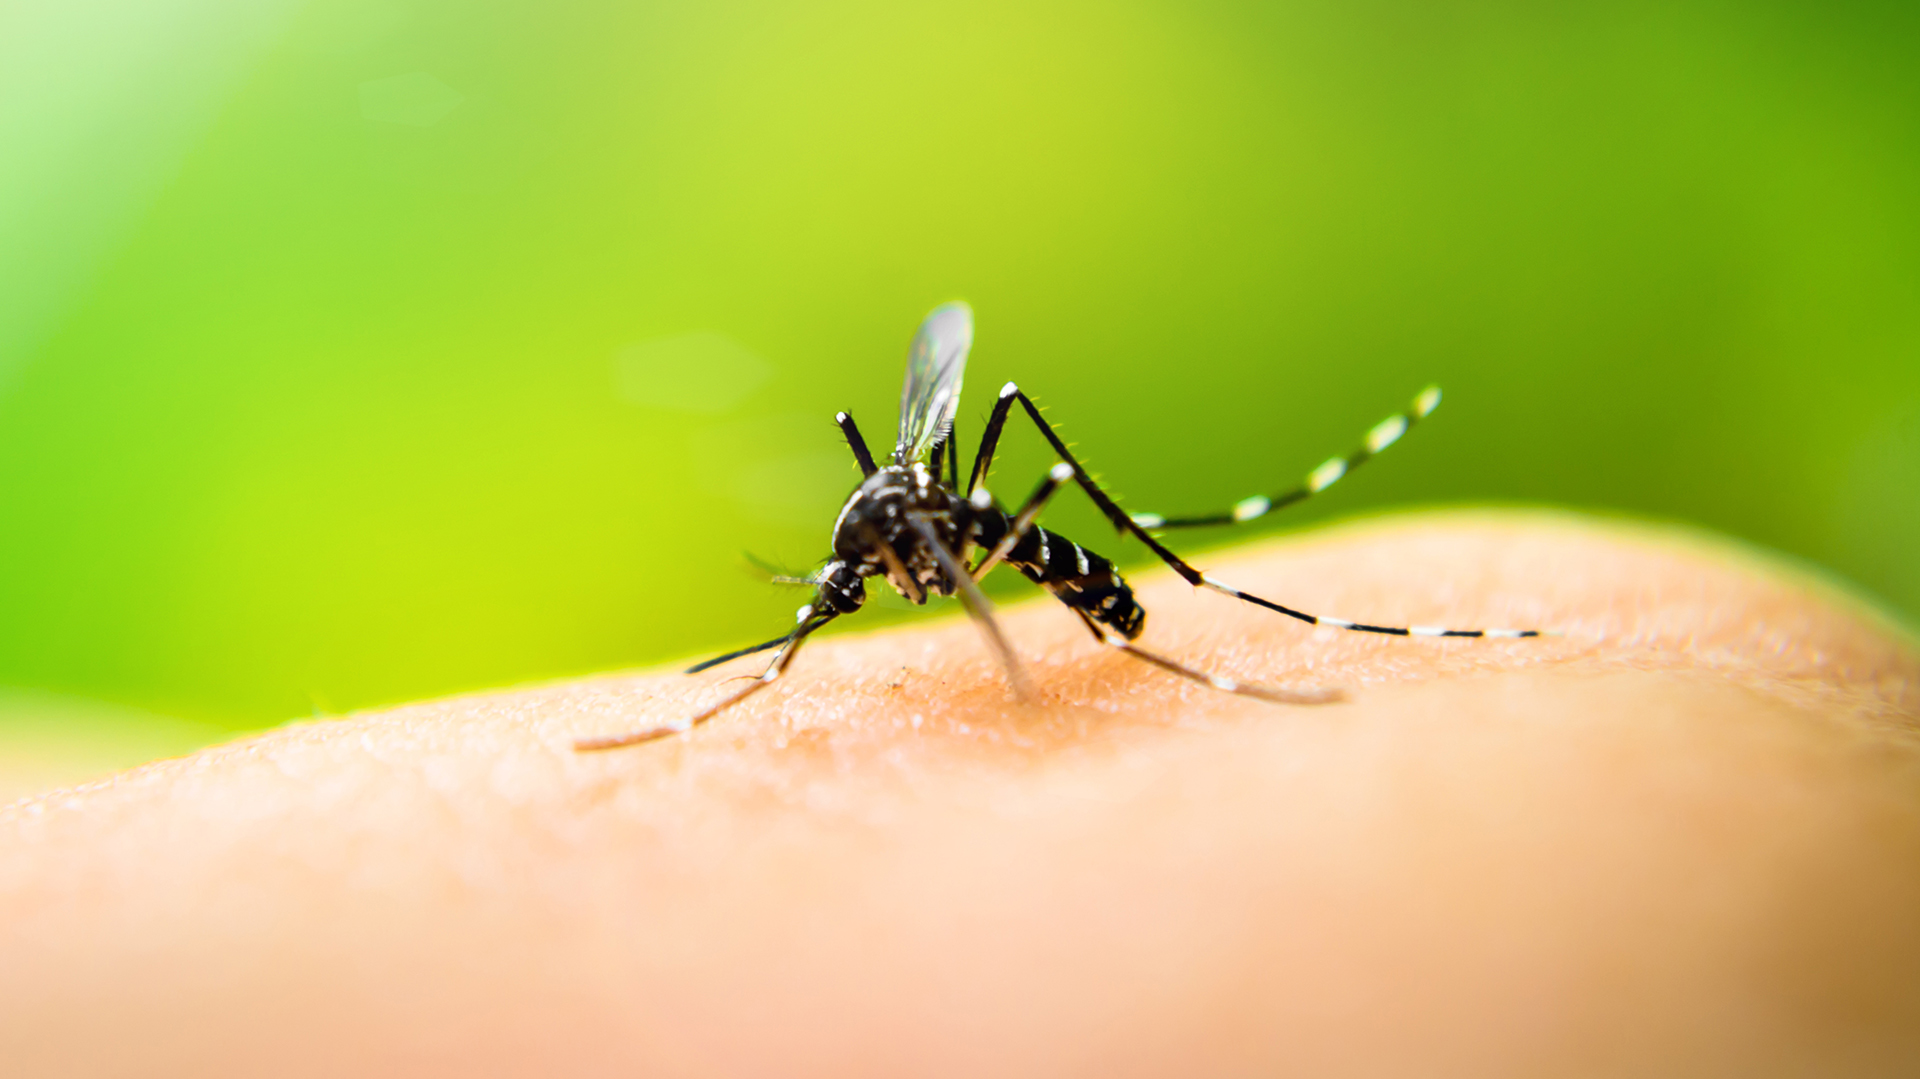 El dengue está en alza en Argentina y la región, por eso los expertos recomiendan extremar cuidados frente al mosquito transmisor Aedes aegypti